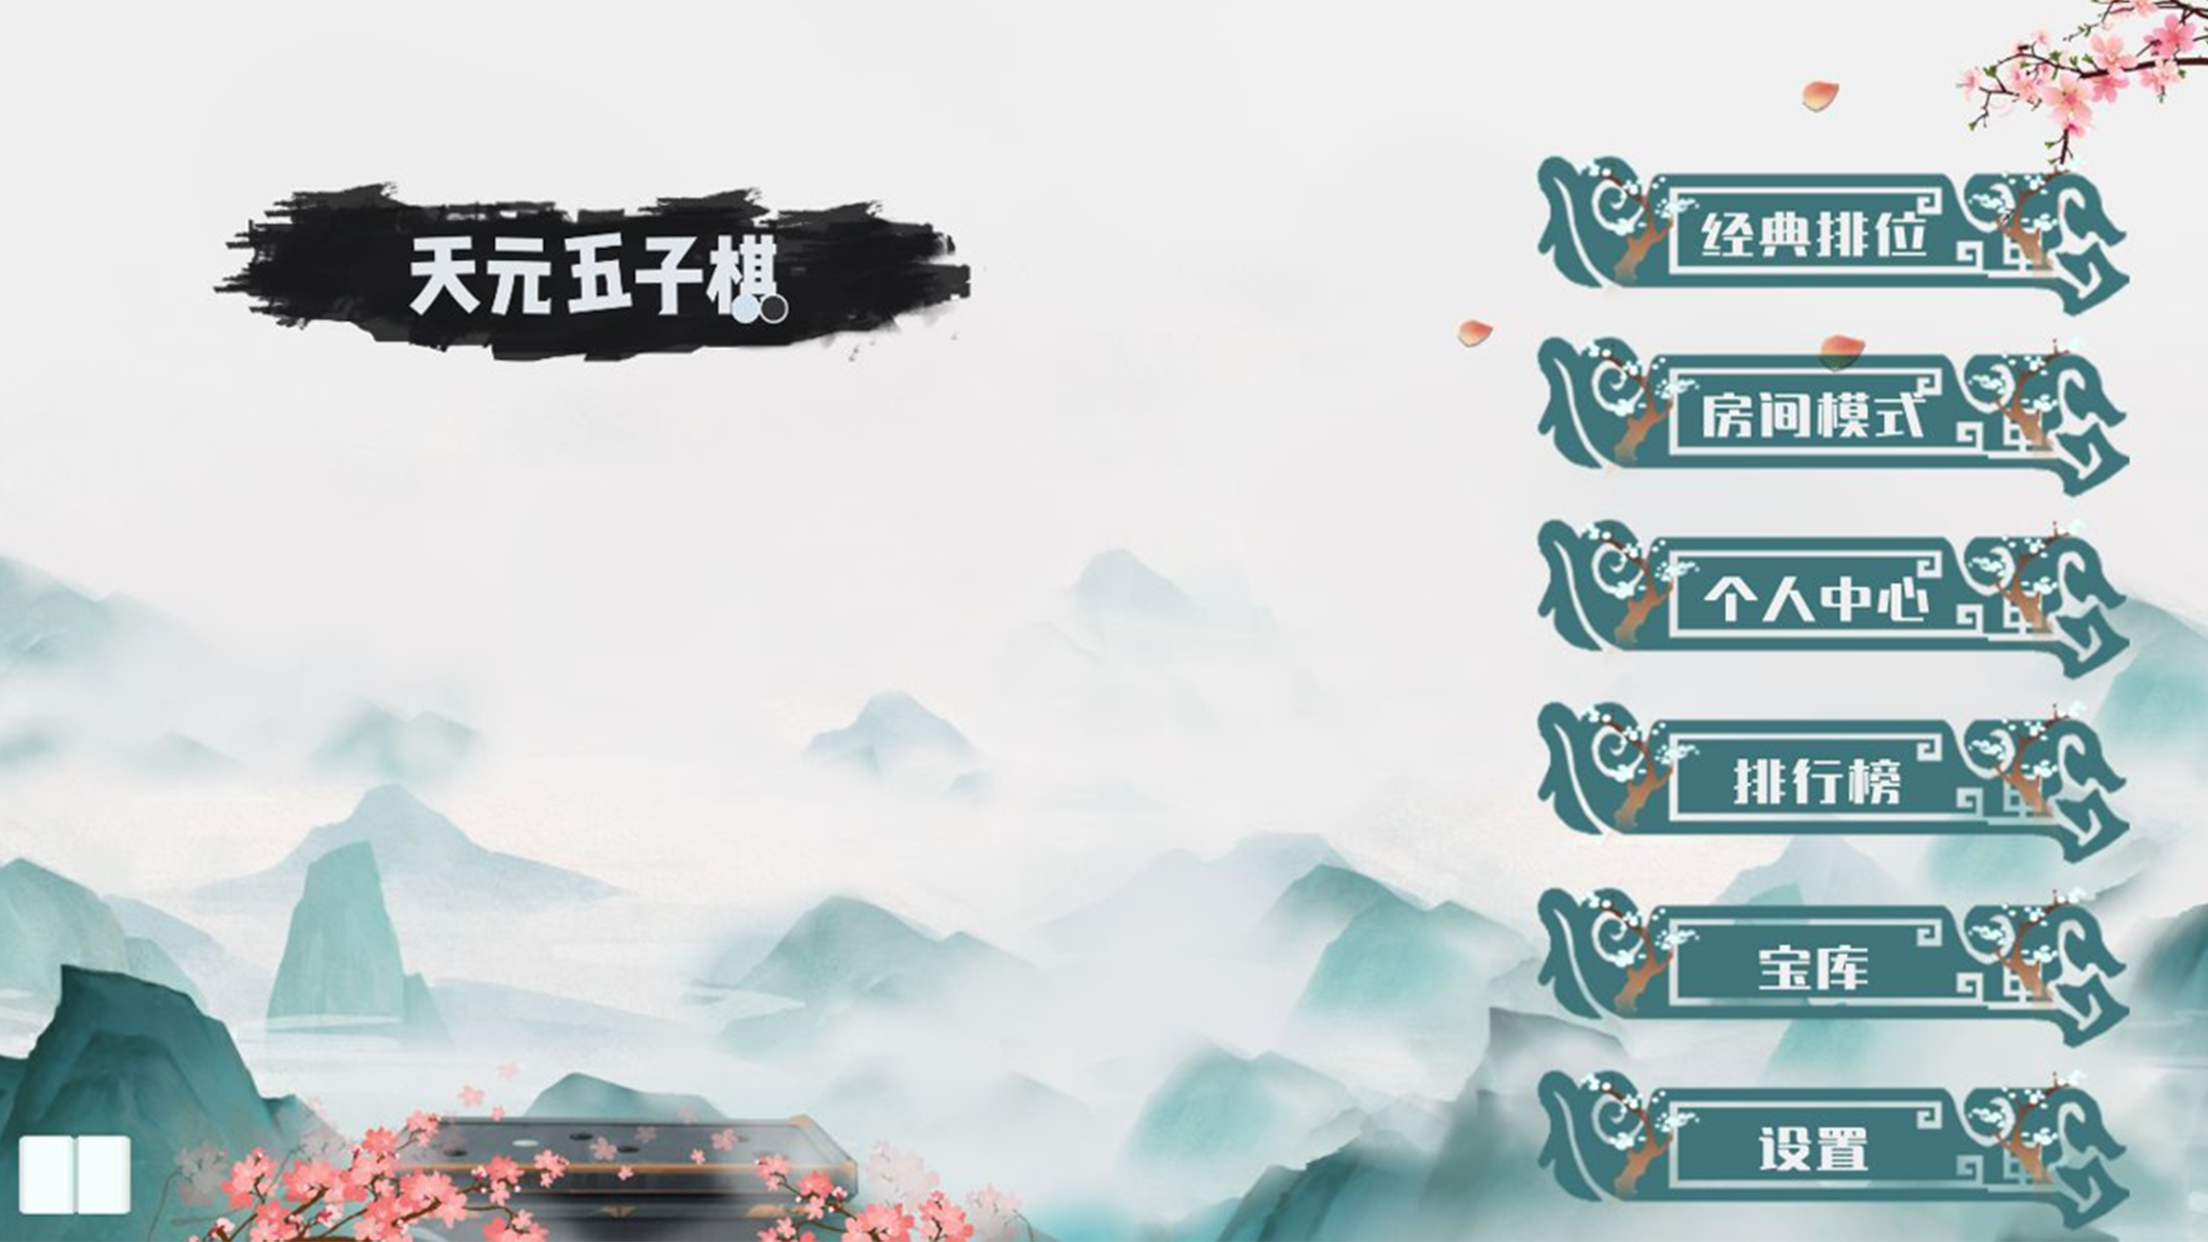 Screenshot 1 of Chaquete Tian Yuan 